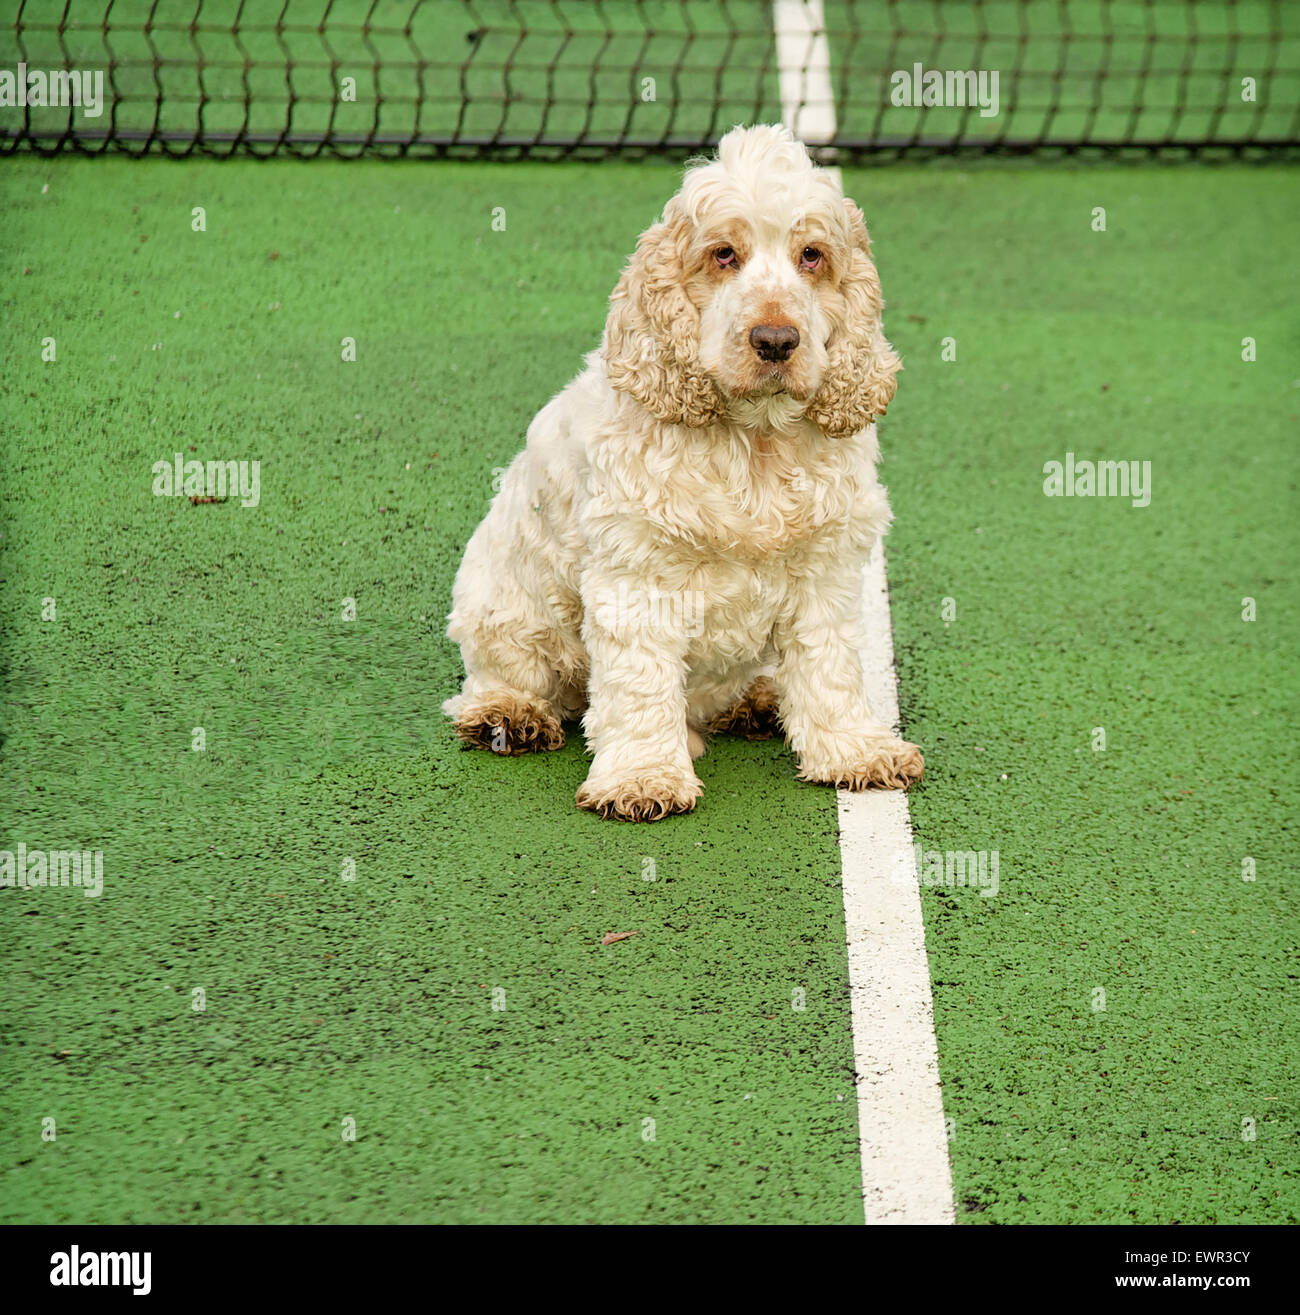 Hund auf Tennis Service Mittellinie direkt in die Kamera schauen.  Cocker Spaniel orange Roan mit Pfote am Centrecourt Linie Stockfoto